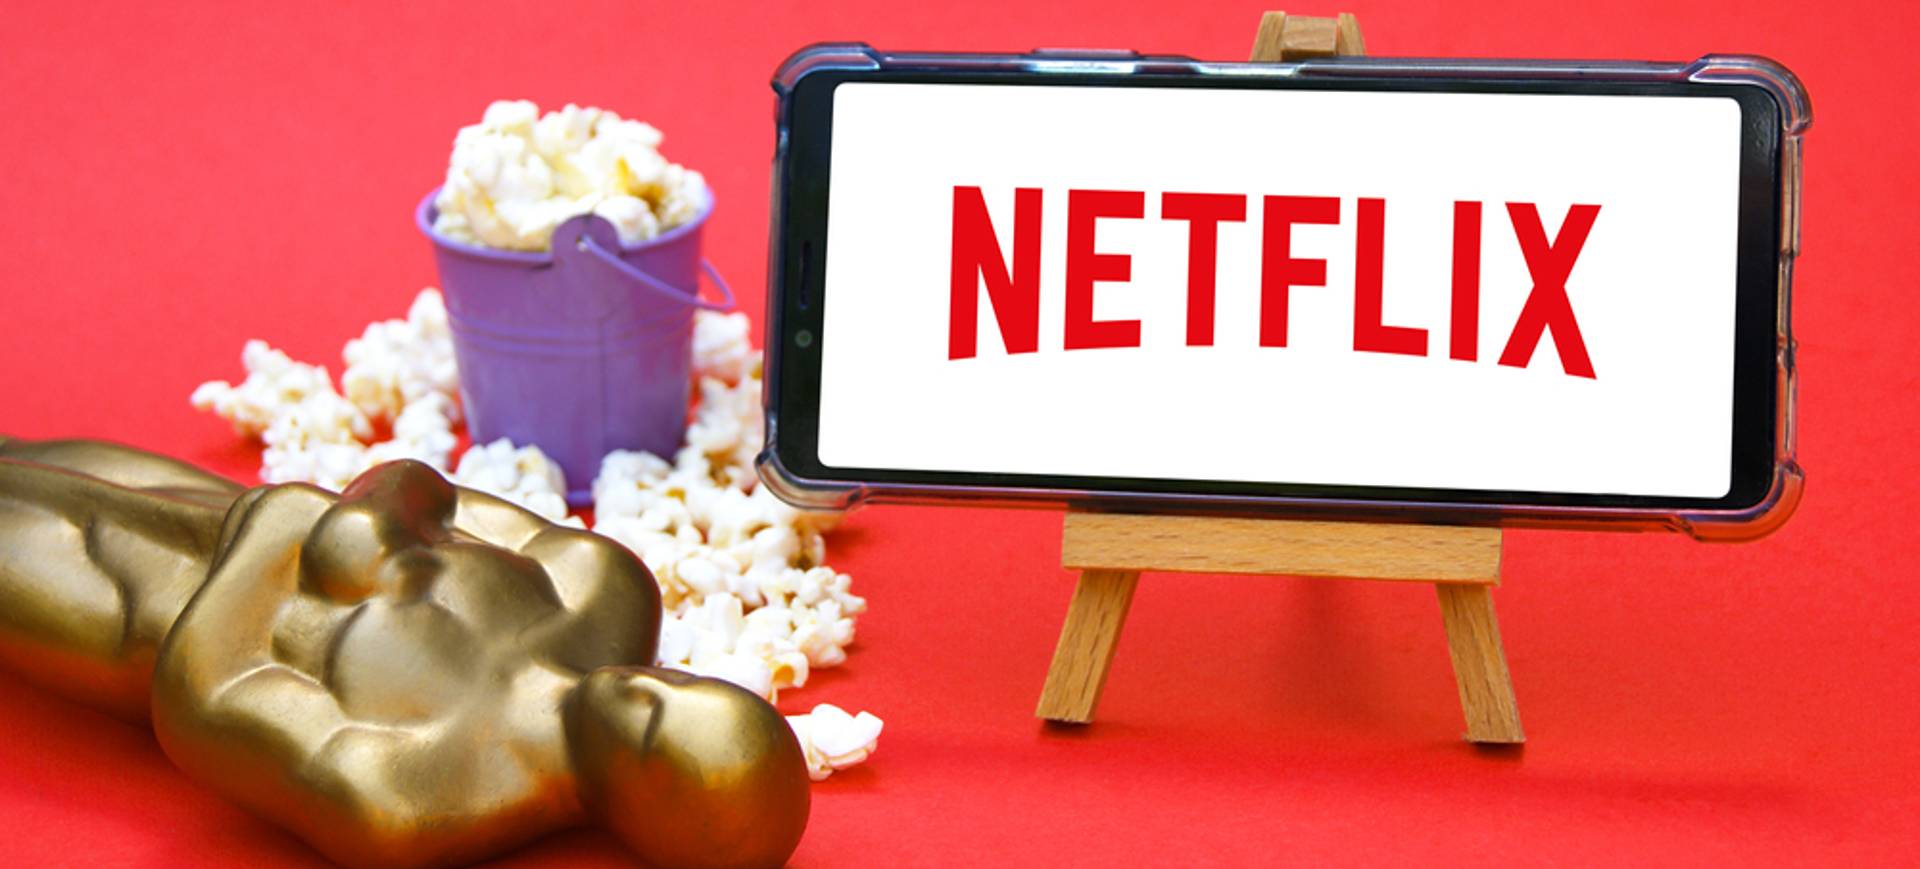 Em um fundo vermelho, a imagem mostra uma estatueta do Oscar deitada no chão, ao lado de um pote de pipoca e um cavalete segurando um smartphone, cuja tela mostra o logotipo da Netflix